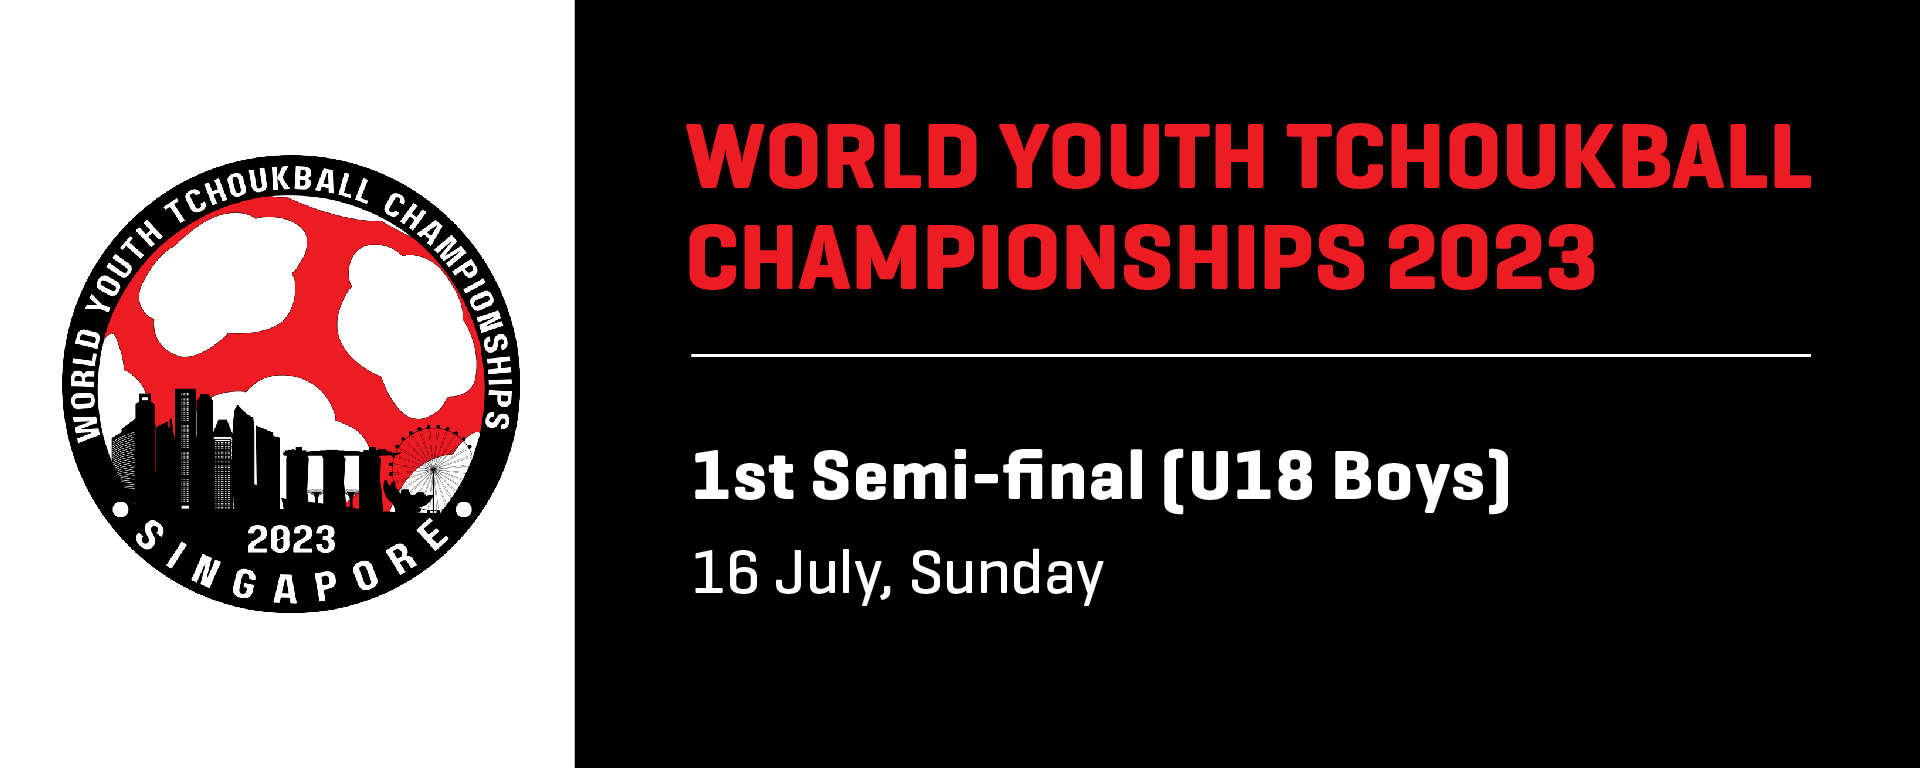 World Youth Tchoukball Championships 2023 | U18 Boys 1st Semi-final | Singapore vs Macau